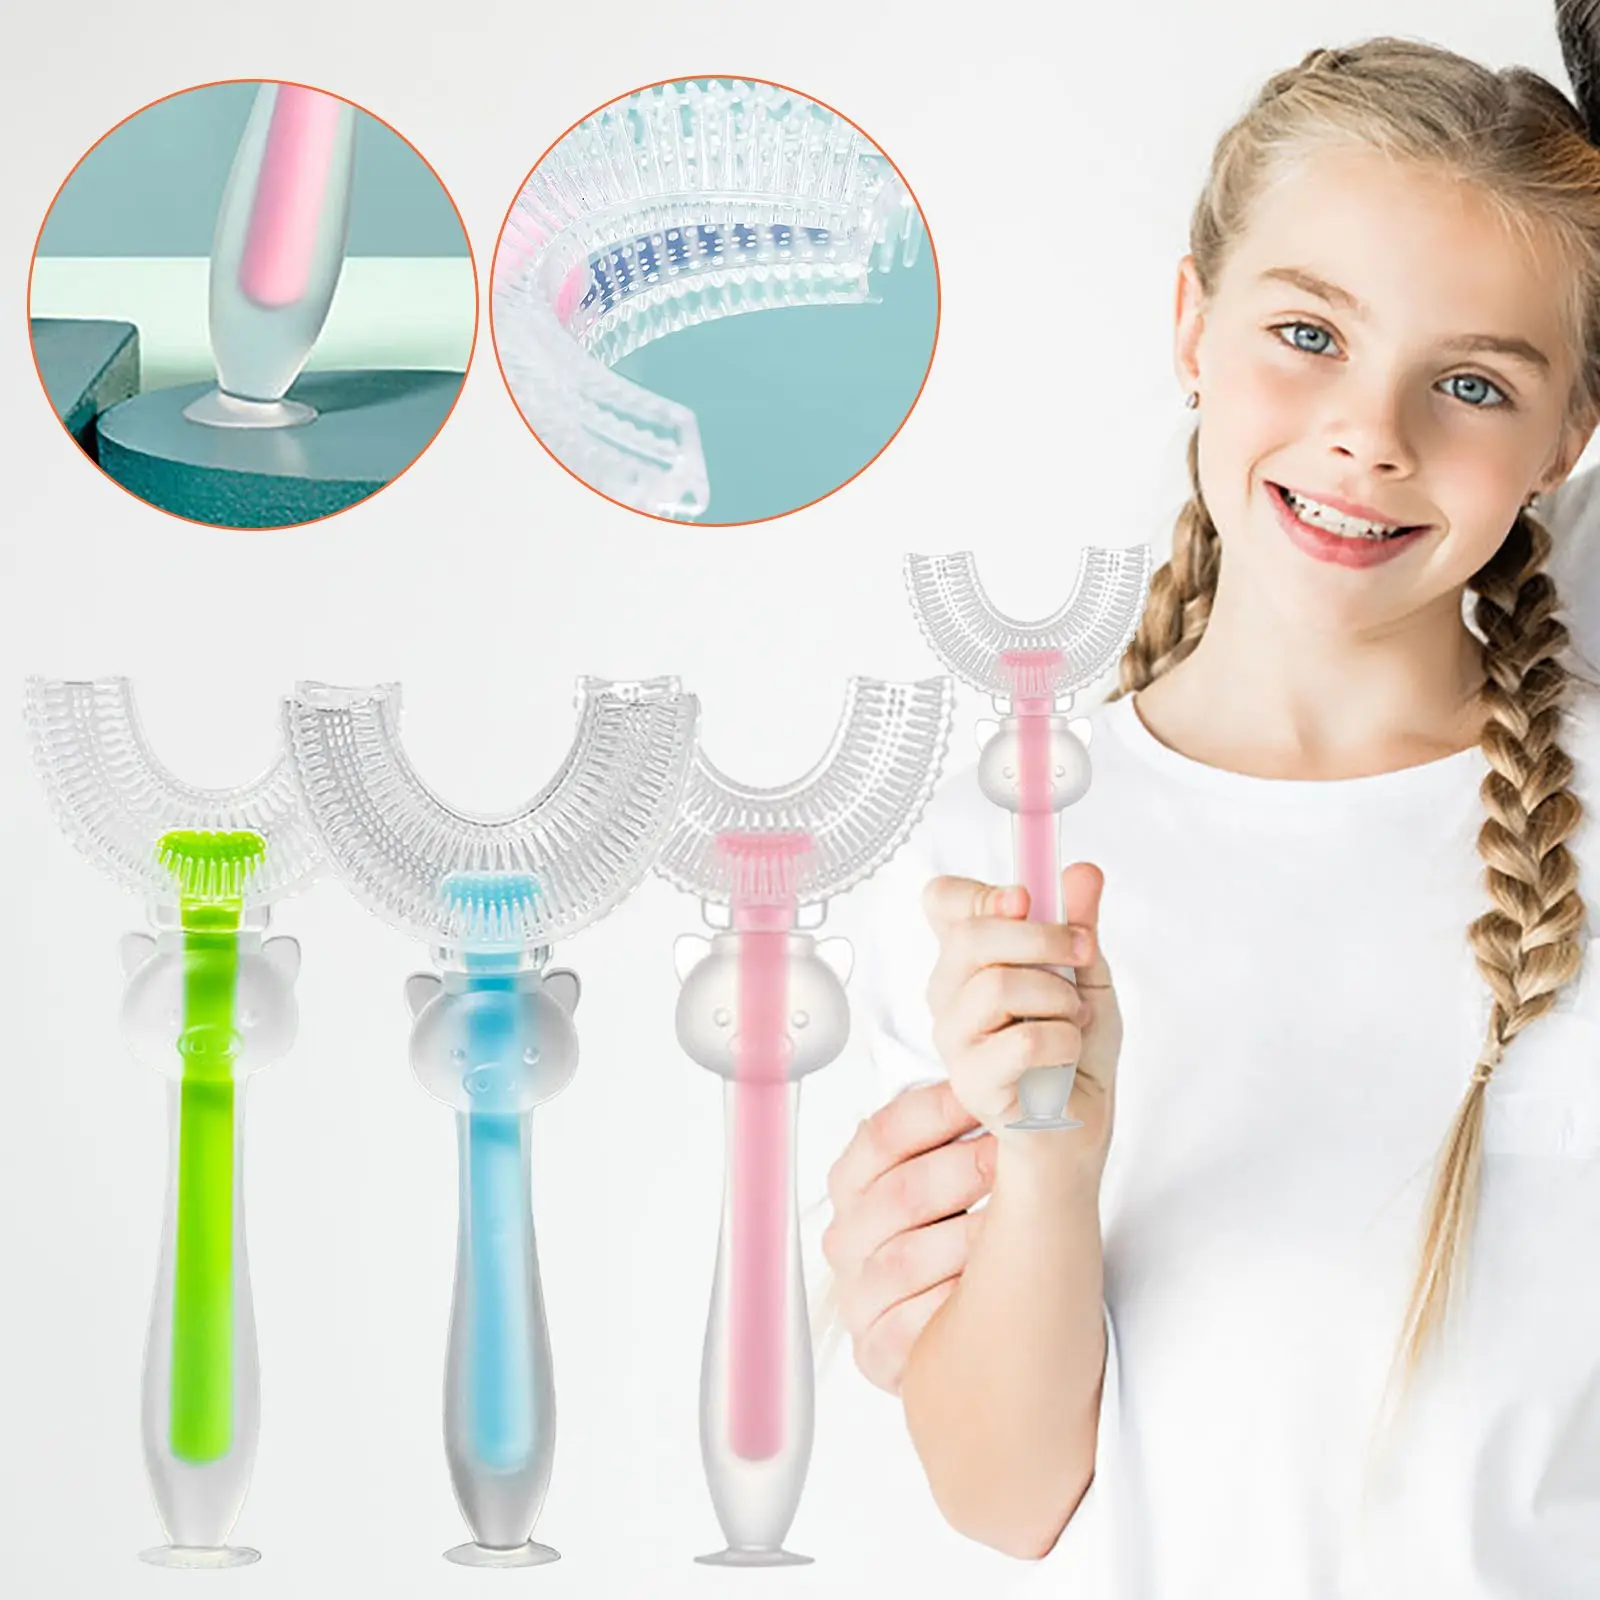 Kct escova de dentes para crianças, escova de dente para cuidados orais macia, 360 graus silicone econômico, escovas de dente para bebês